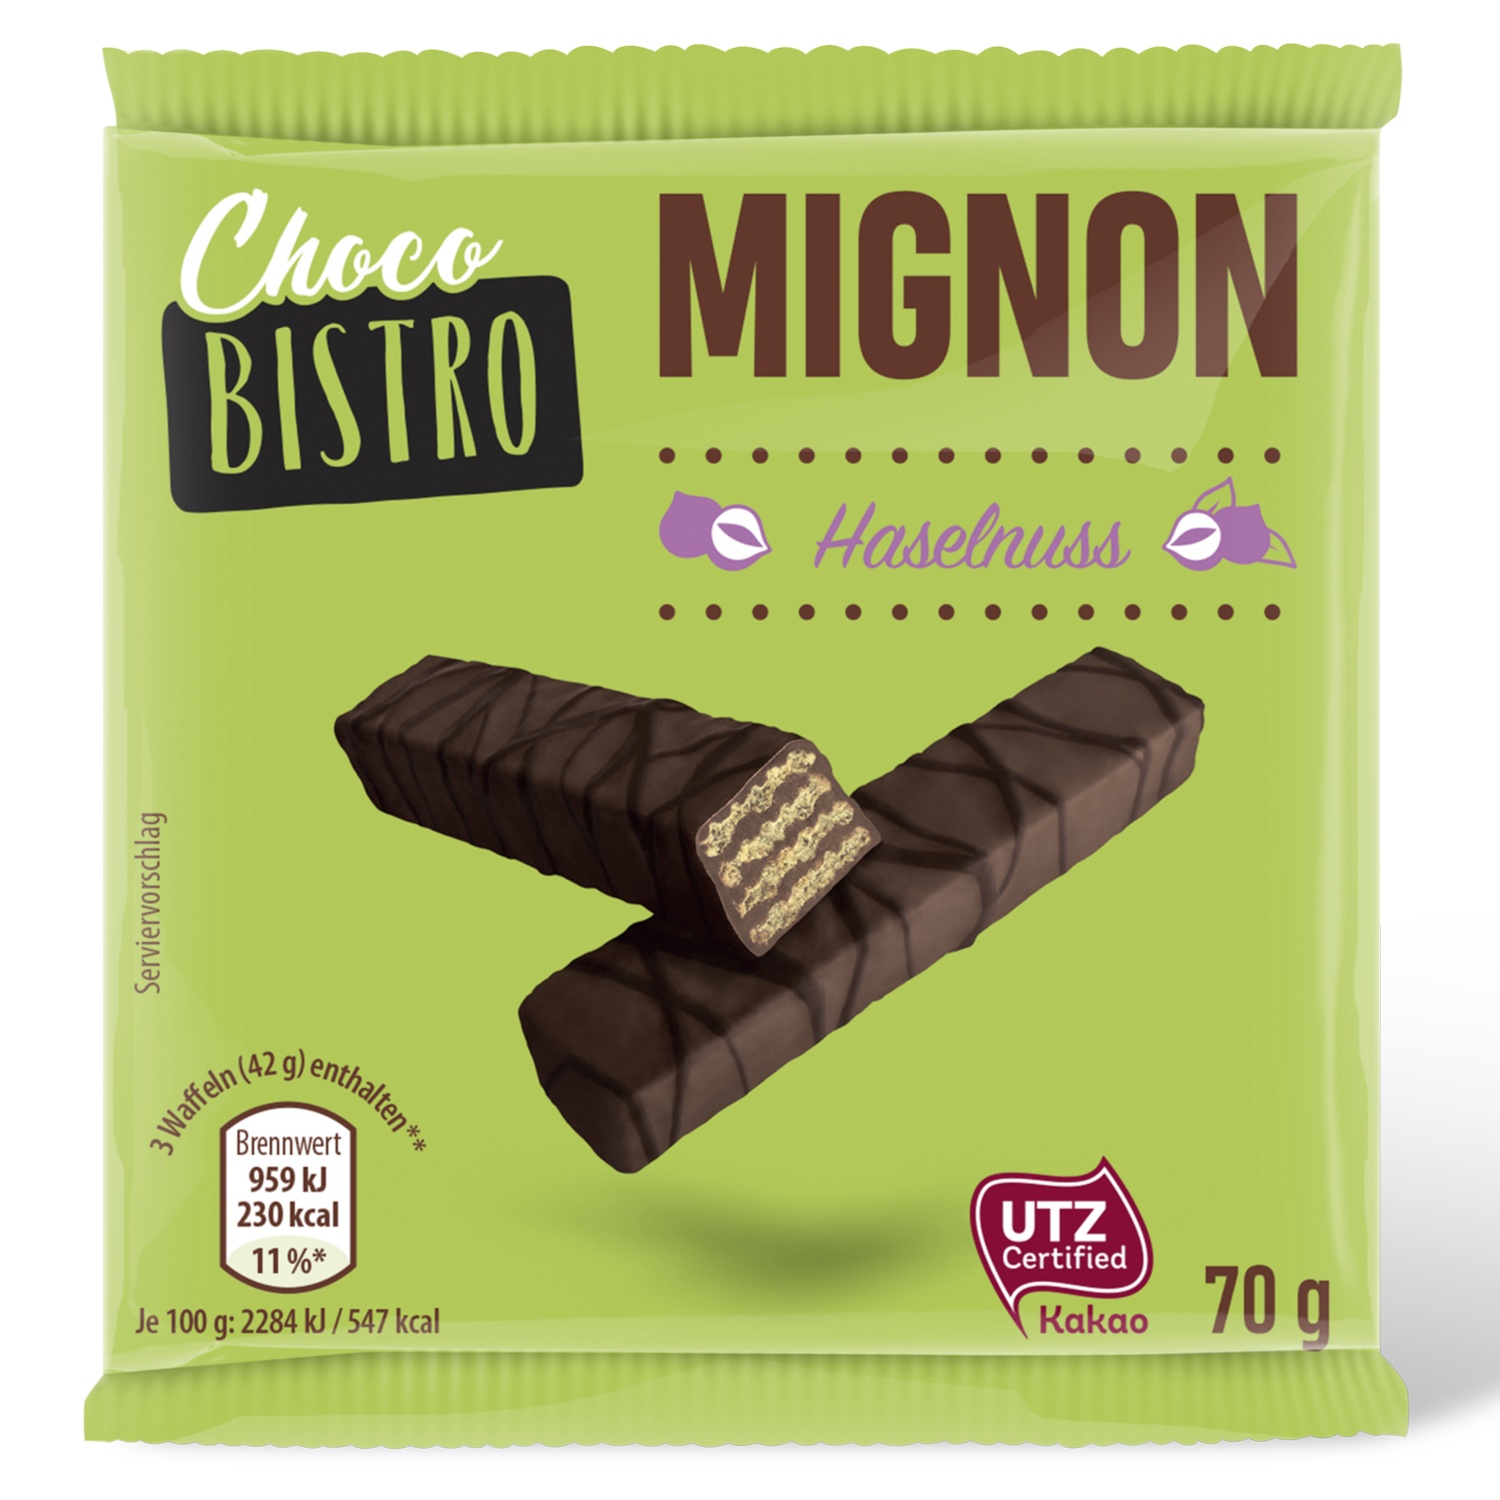 Choco BISTRO Mignon 210g